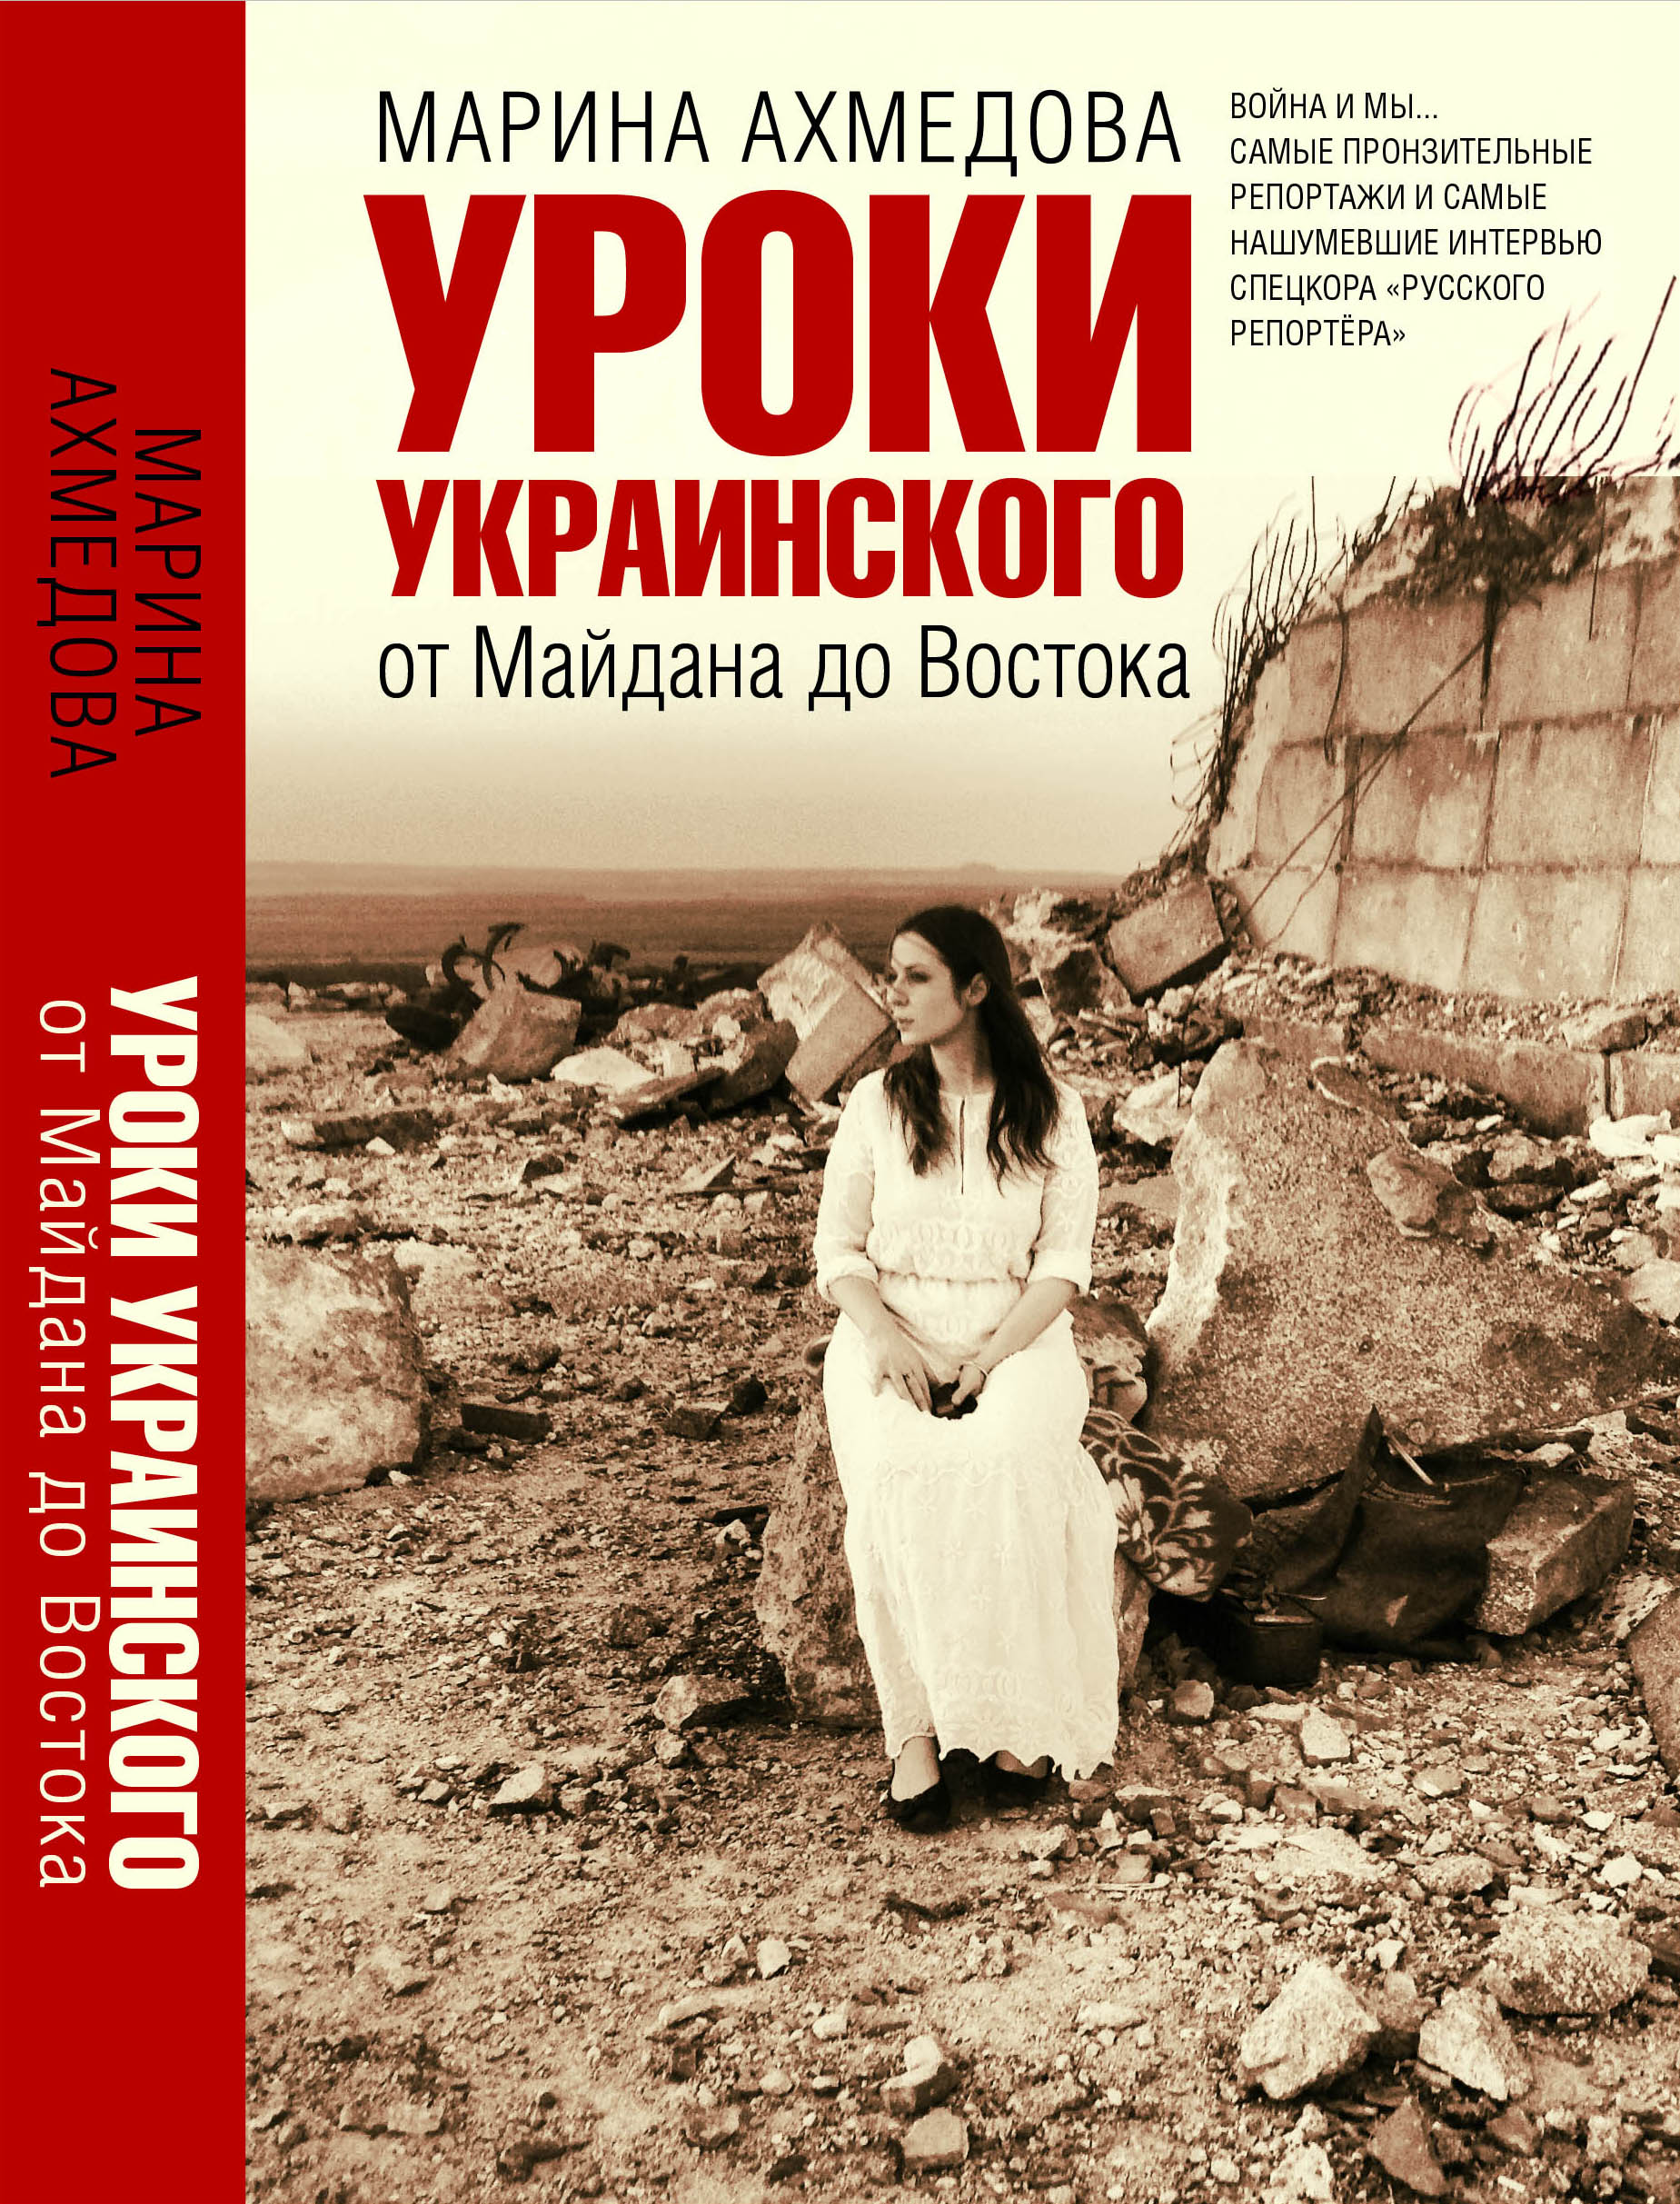 Das Buch „ukrainische Lehrstunden“ der russischen Reporterin Marina Achmedowa ist seit neuestem in der Ukraine verboten / Verlag, n-ost 